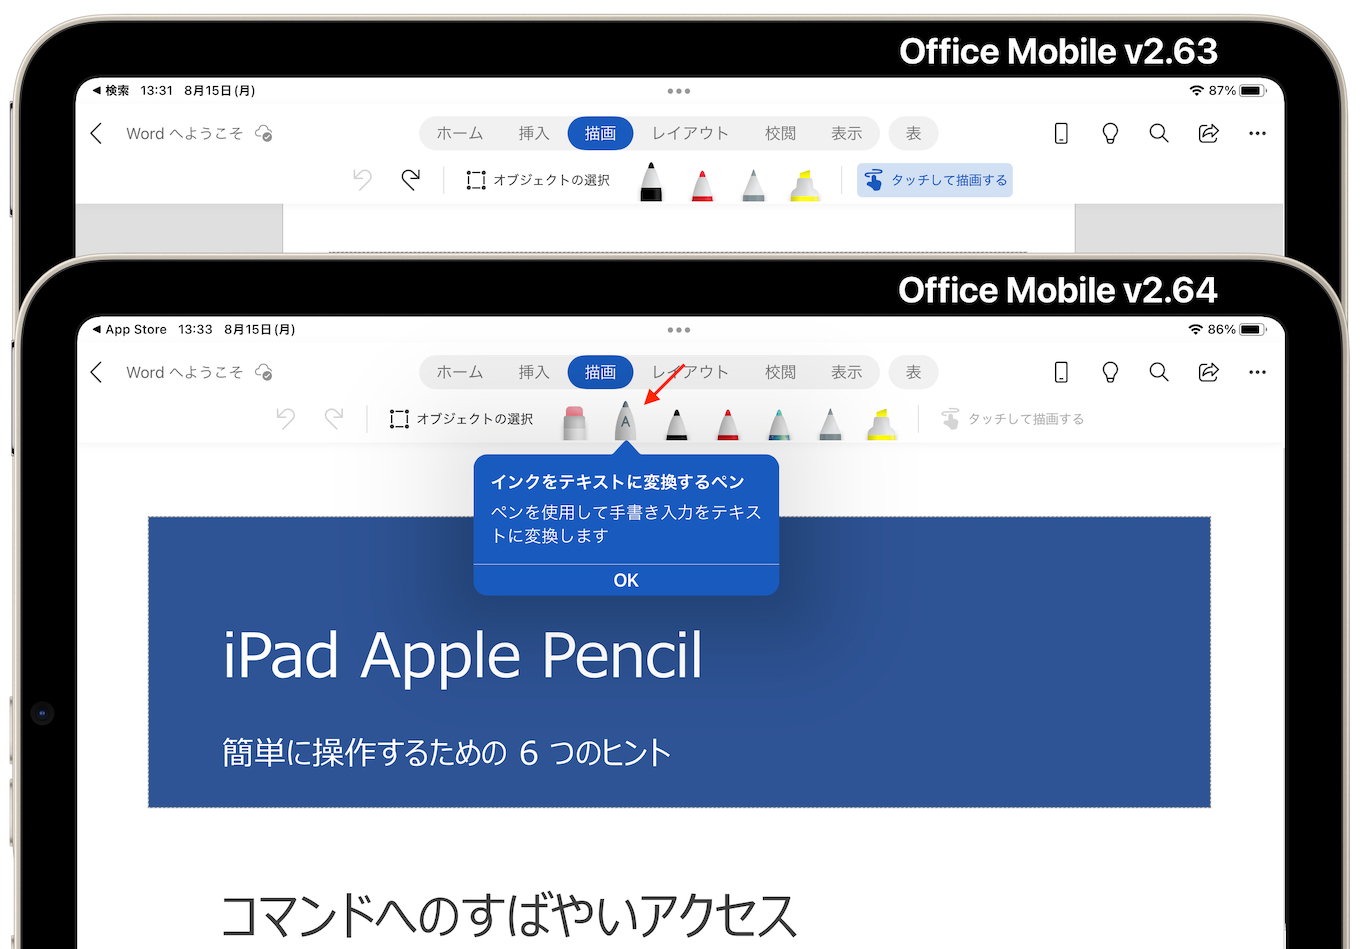 Office Mobile v2.63とOffice Mobile v2.64